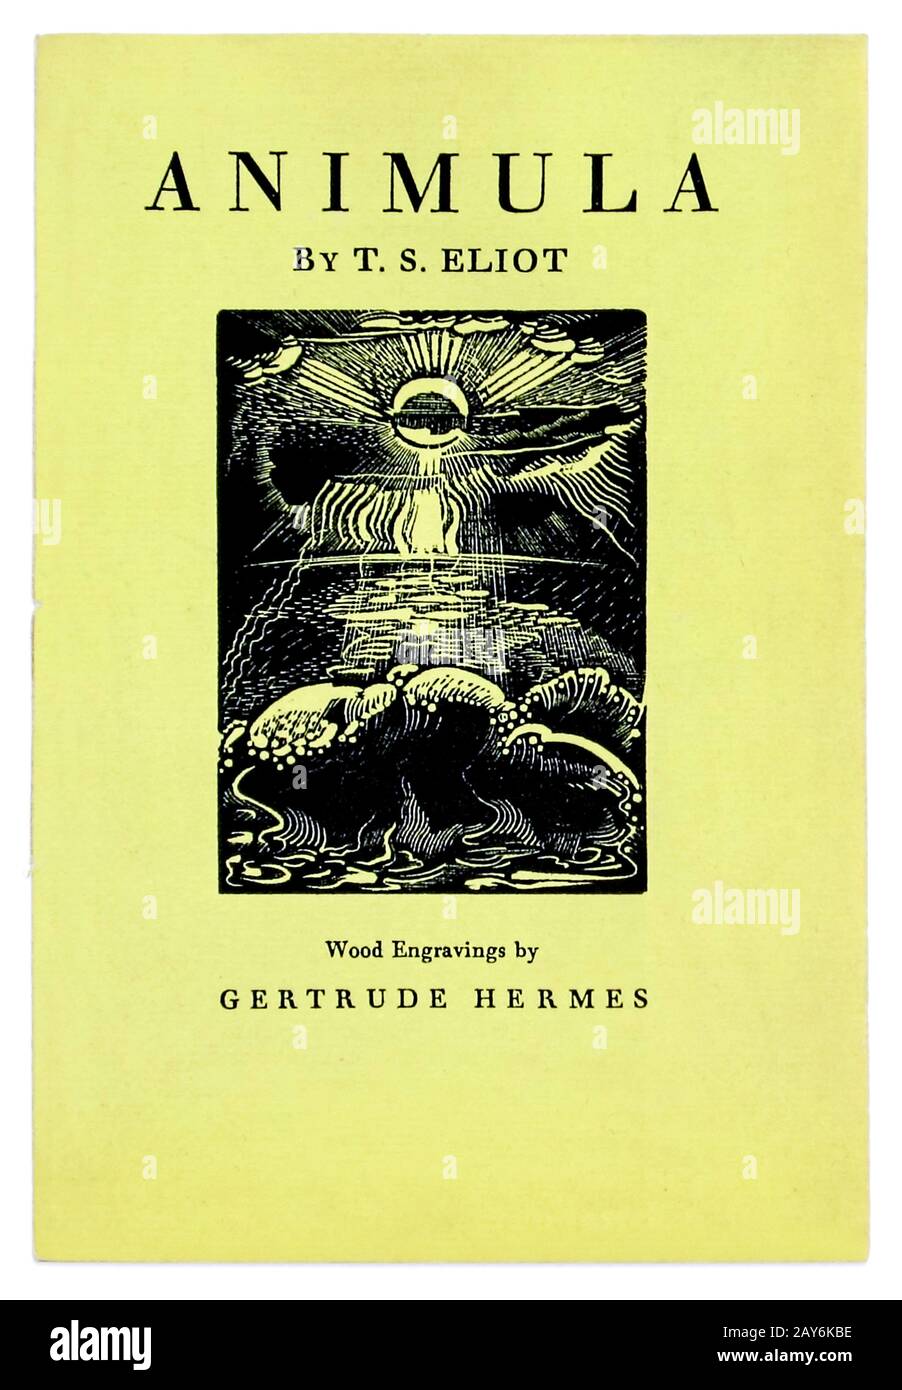 Animula de T. S. Eliot (1888-1965) con cortes de madera de Getrude Hermes (1901-1983). Fotografía del folleto original raro de 1929 publicado por Faber & Faber, Londres Foto de stock